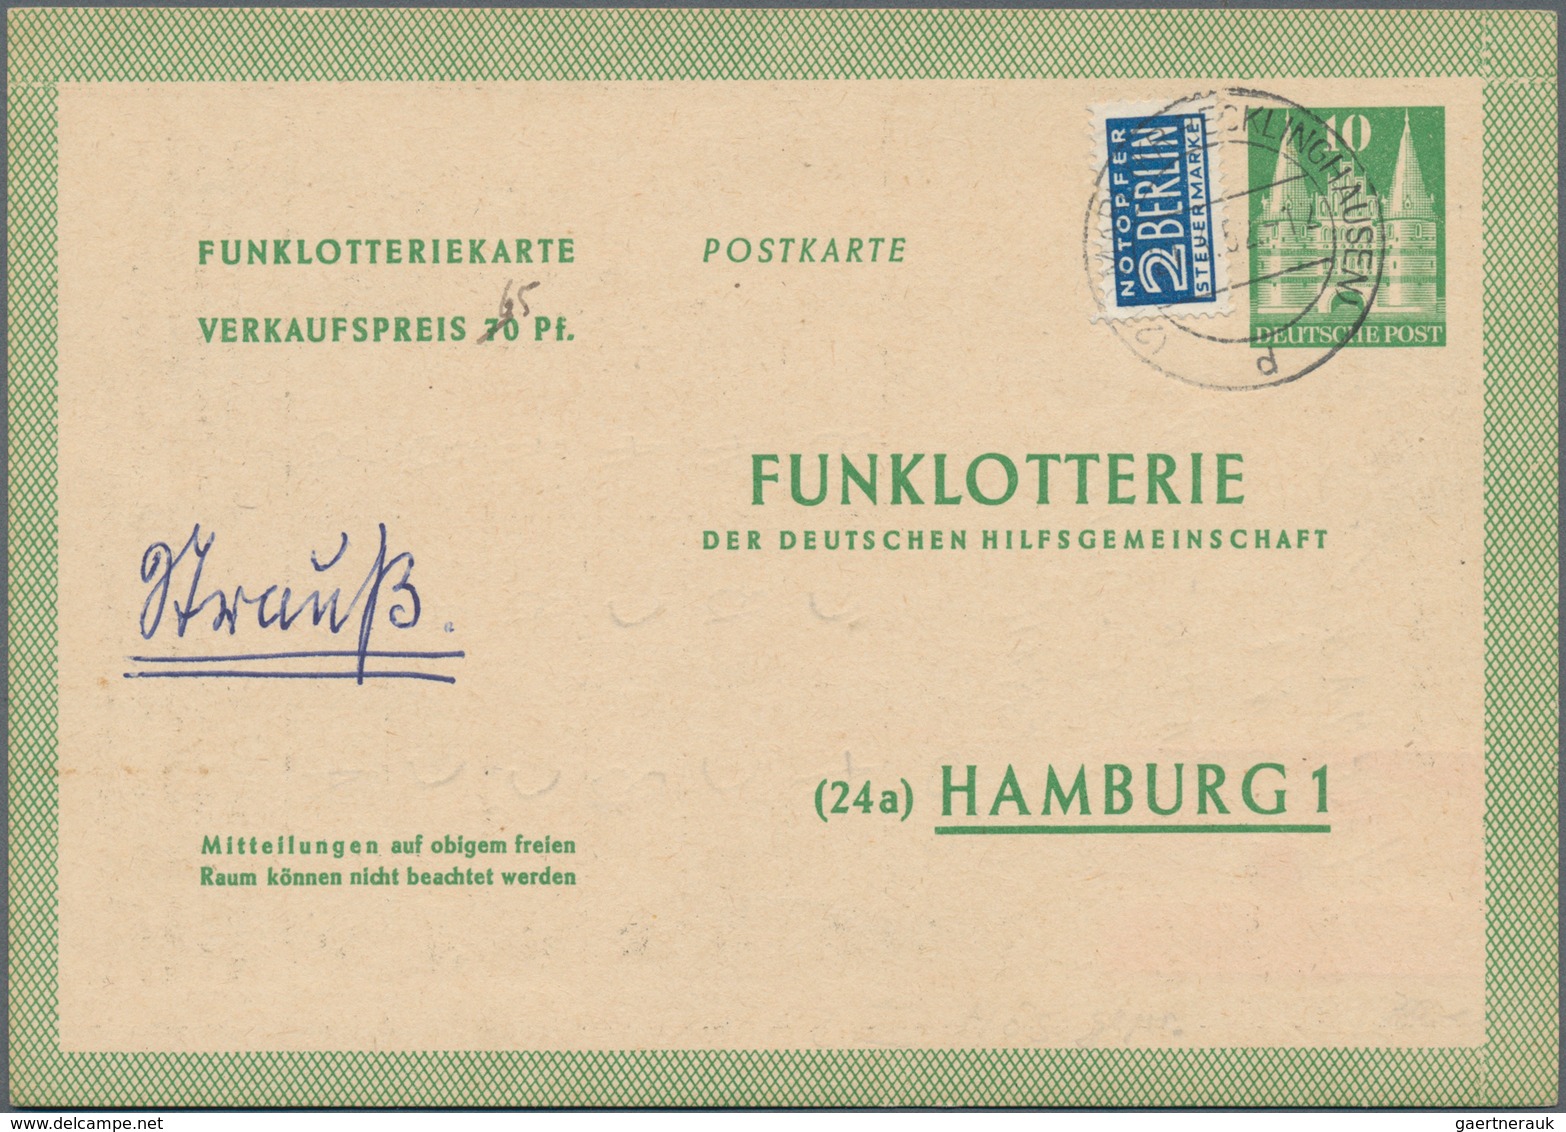 Deutschland nach 1945: 1945/1950, Posten von 1.000/1.5000 meist ungebrauchten Ganzsachenkarten, dabe